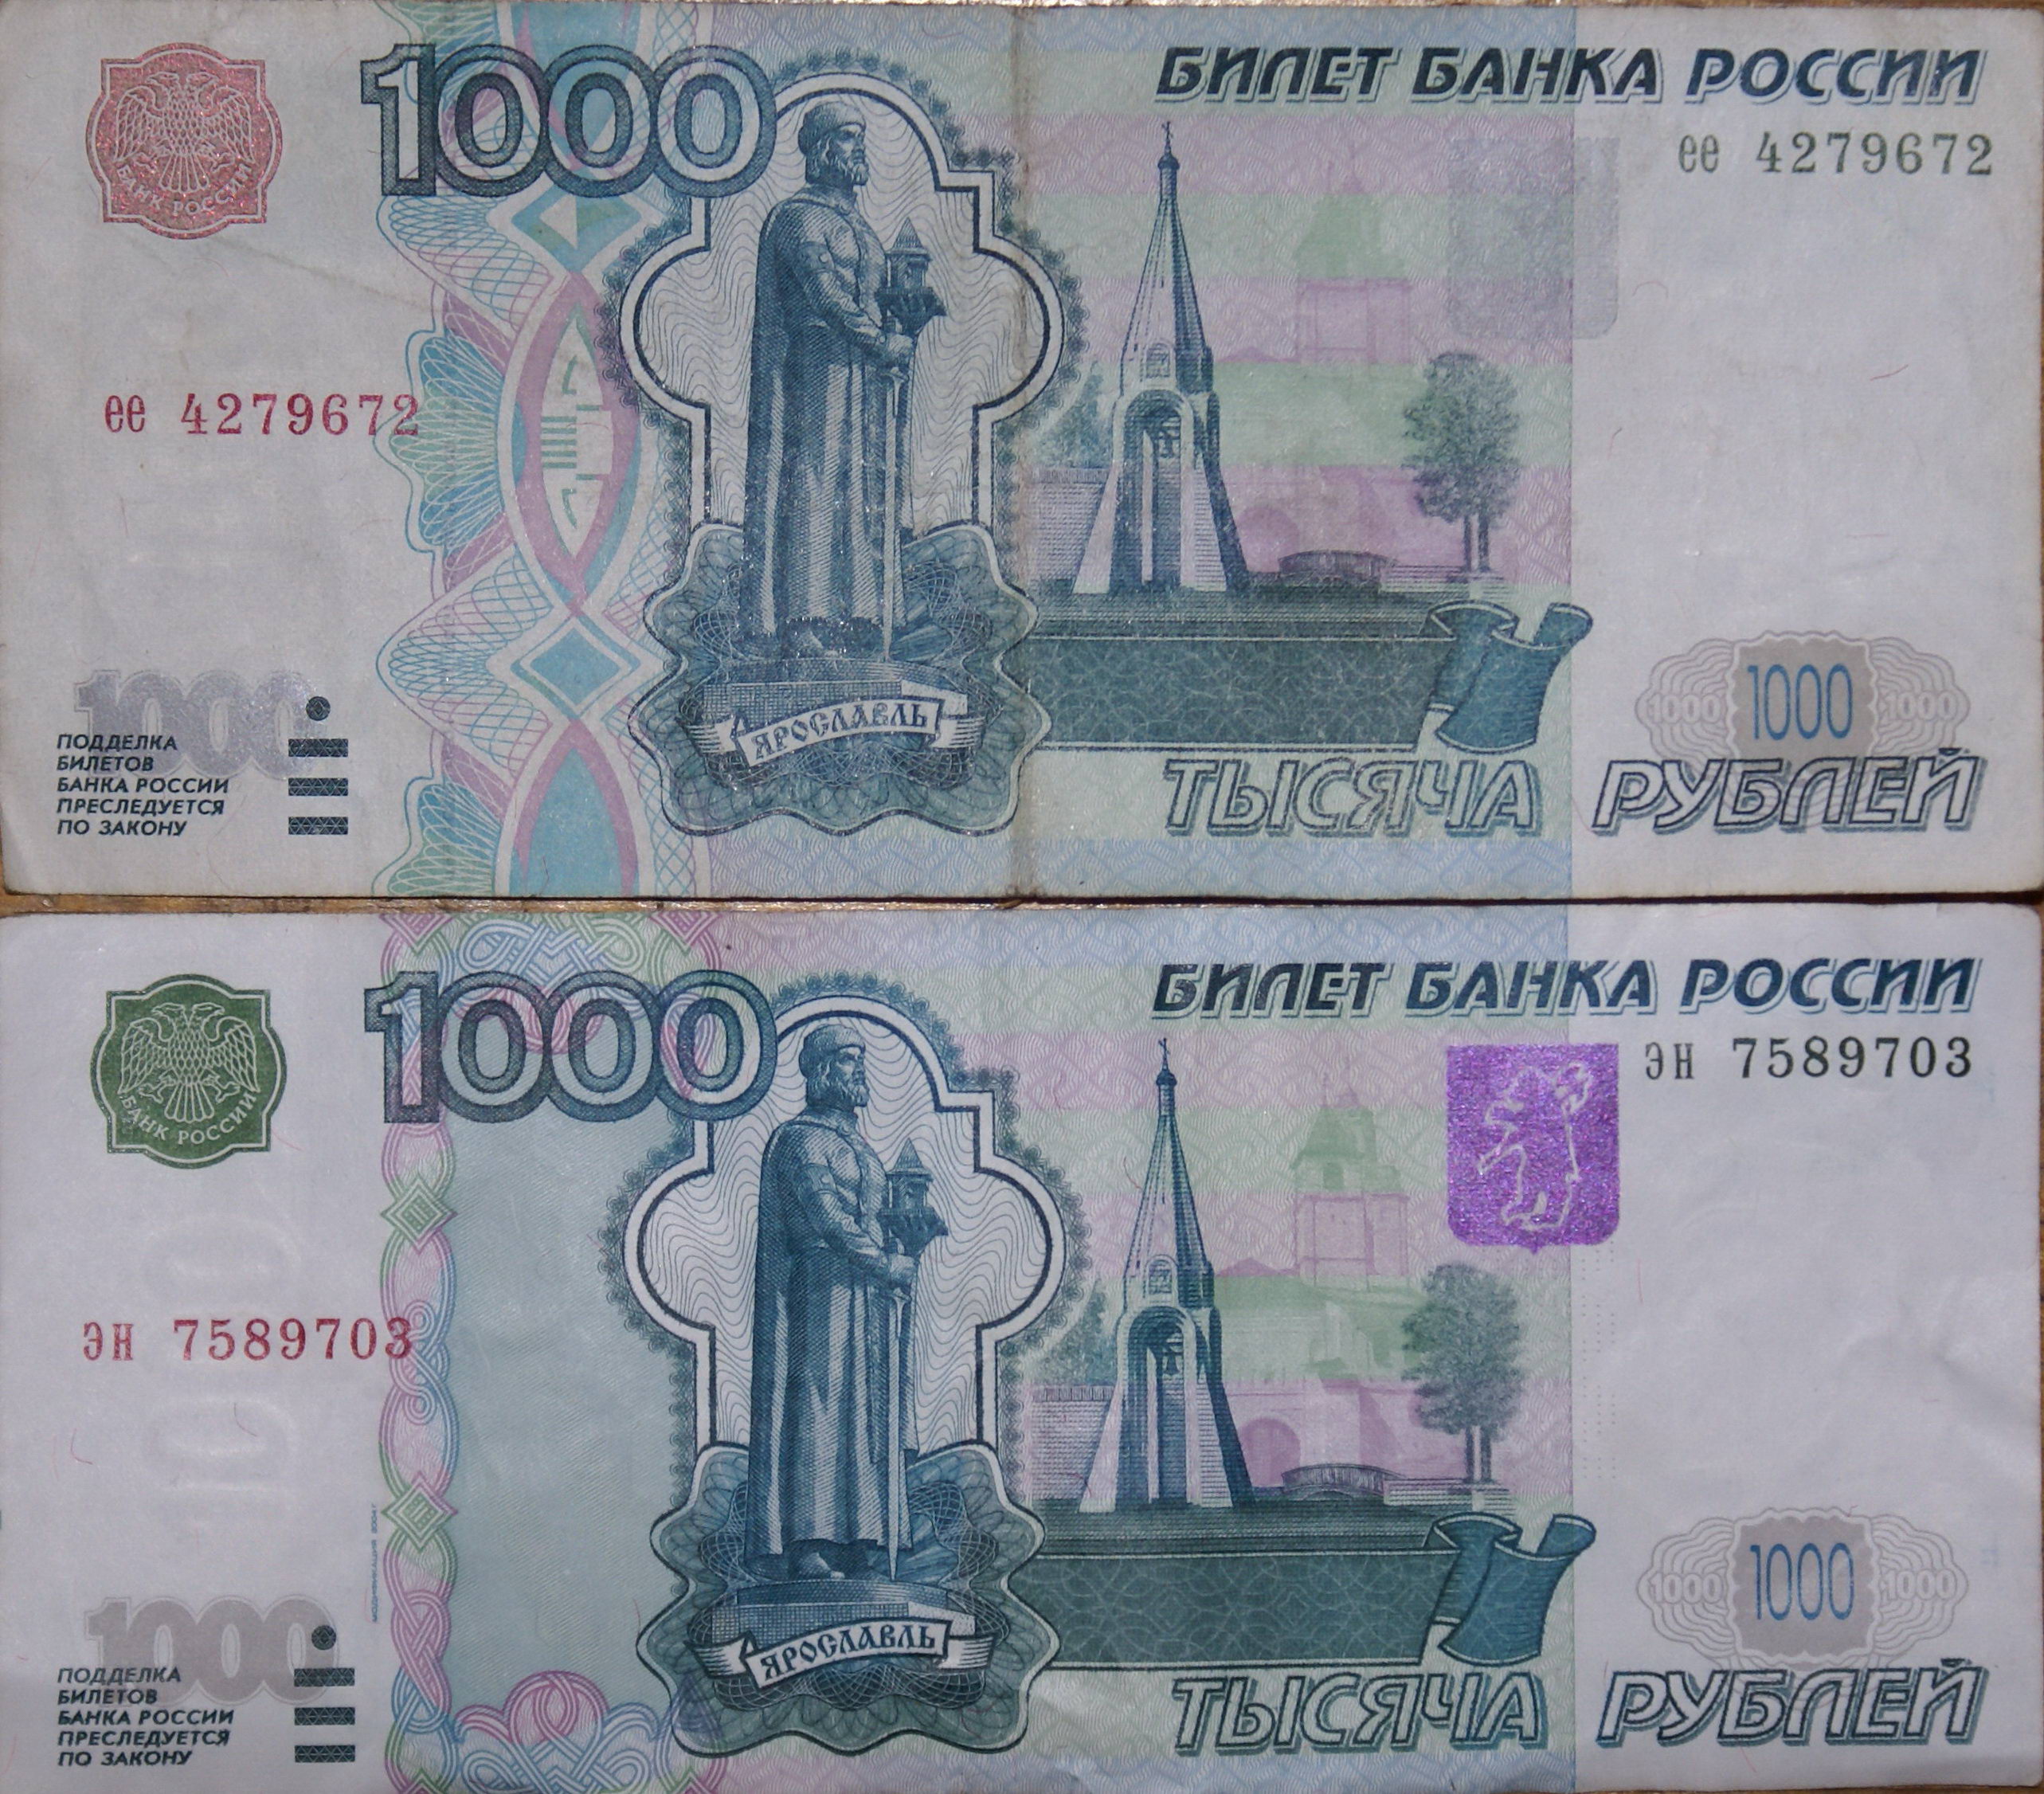 Вернем 1000 рублей. Тысячная купюра 1997 года. Купюра 1000 р 1997 года. Купюра 1000 рублей старого образца 1997. 1000 Купюра 1997 года старого образца.